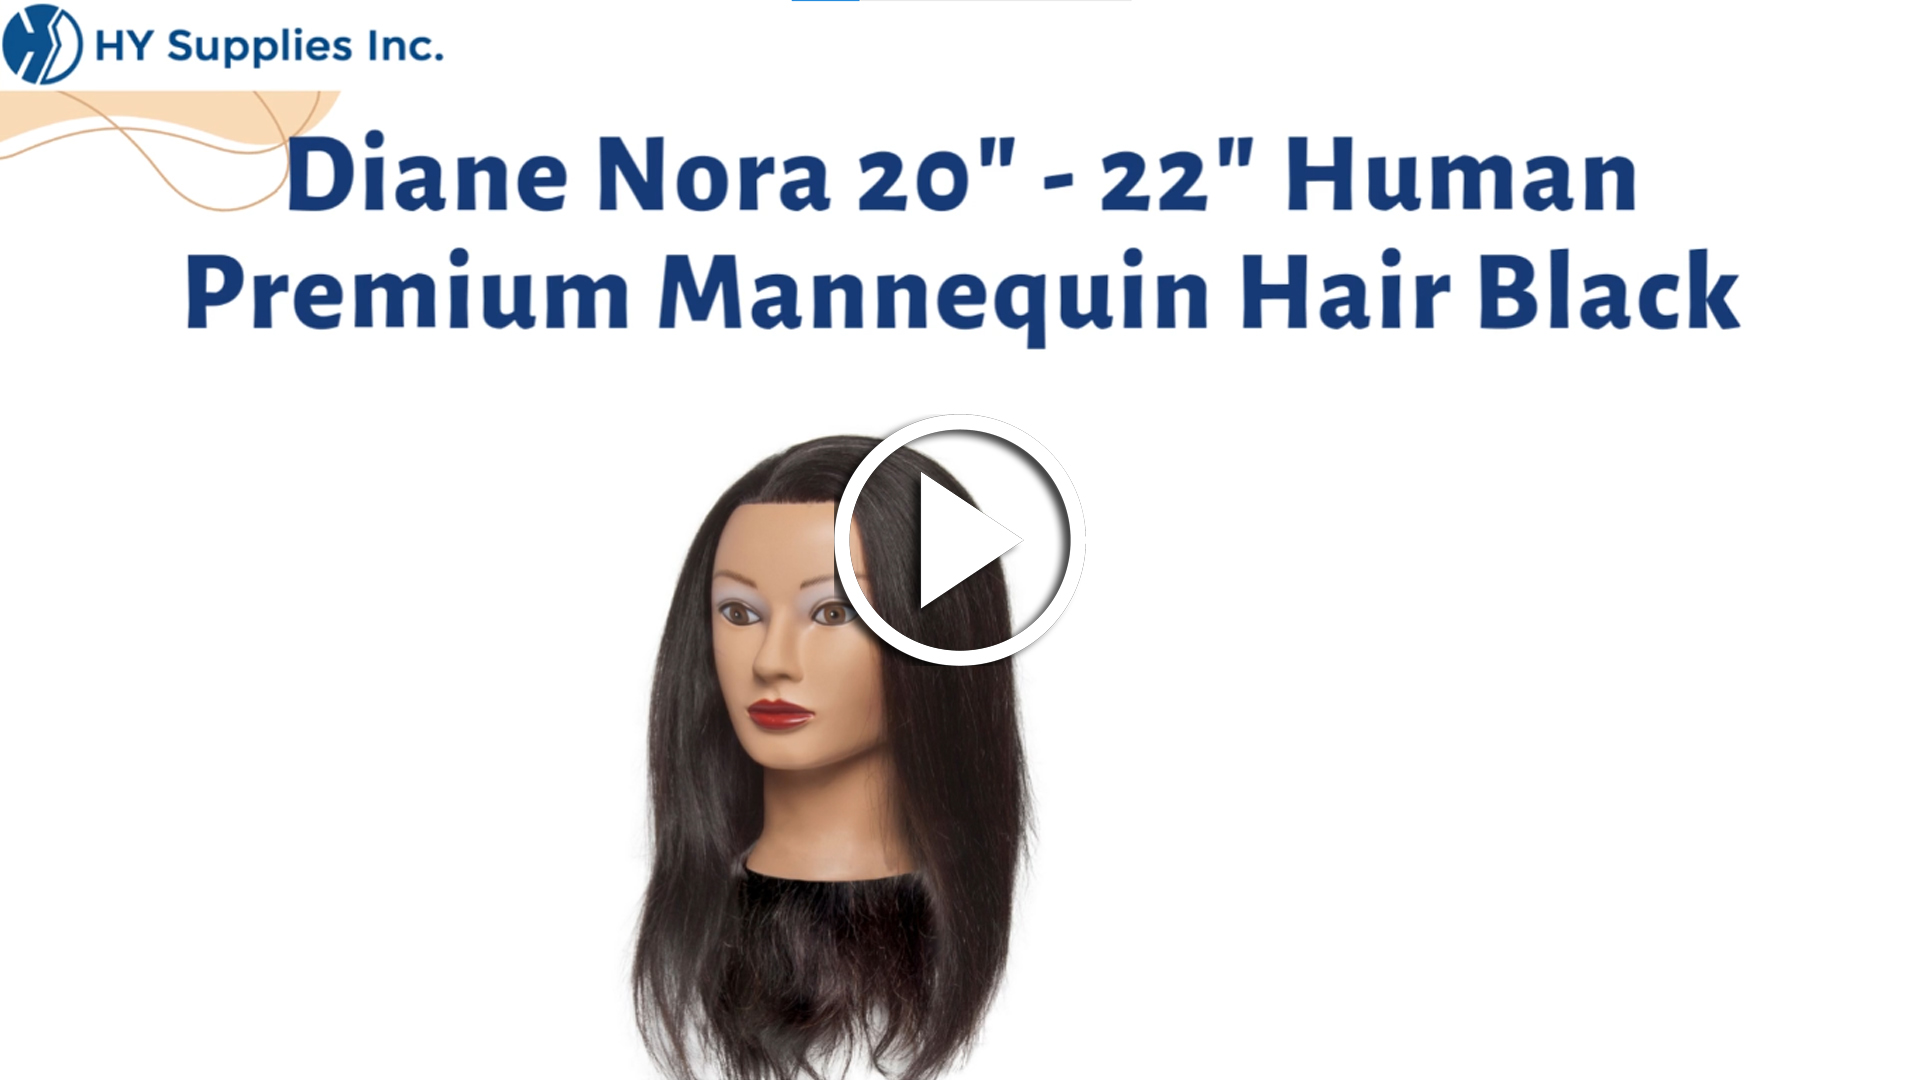 Diane Nora 20"- 22" Human Premium Mannequin Hair Black